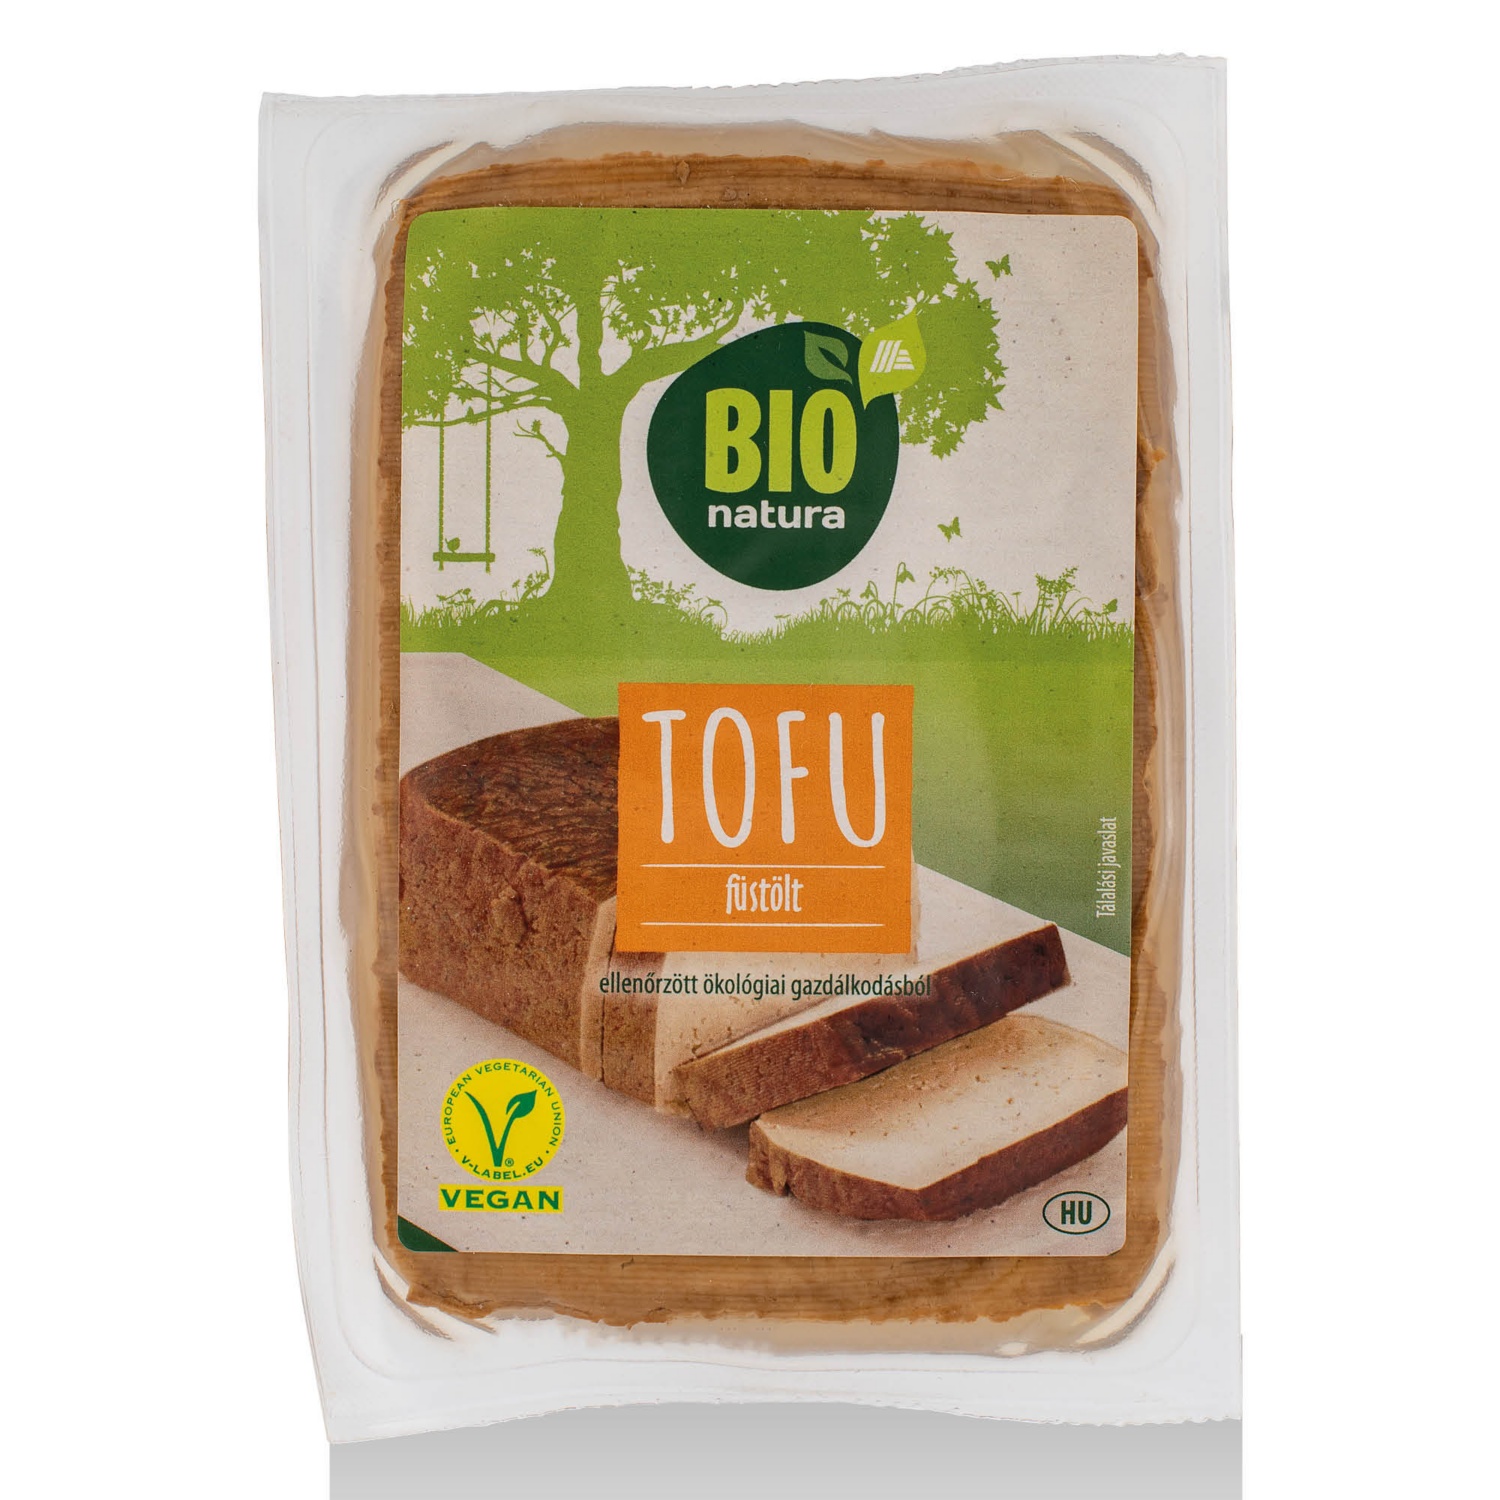 BIO NATURA Bio tofu, füstölt, 250 g